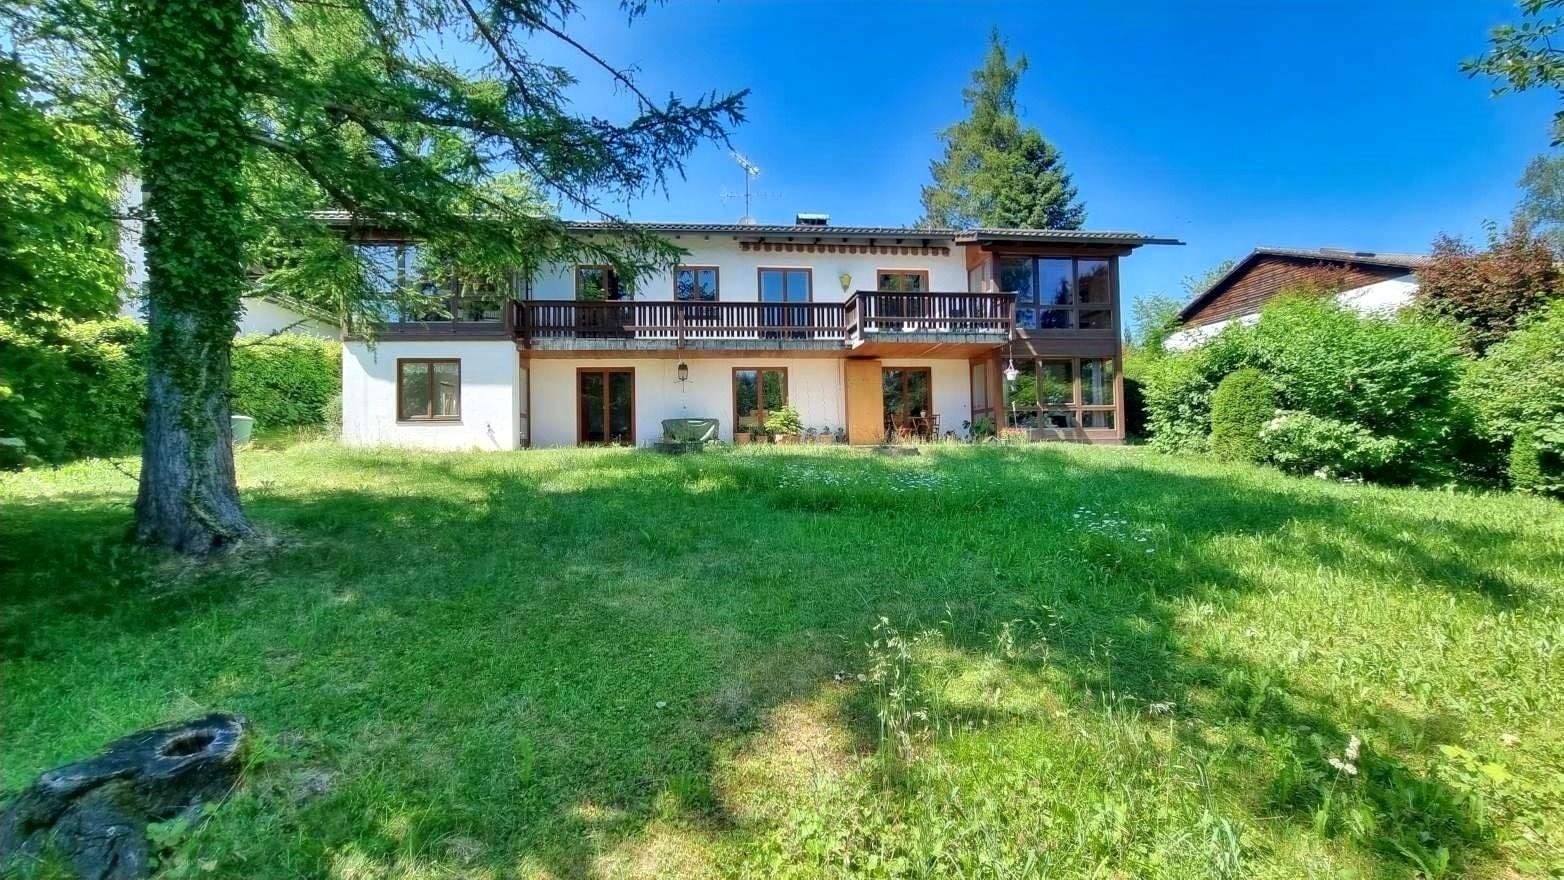 Einfamilienhaus in Murnau am Staffelsee - Kuchenbauer-Immobilien